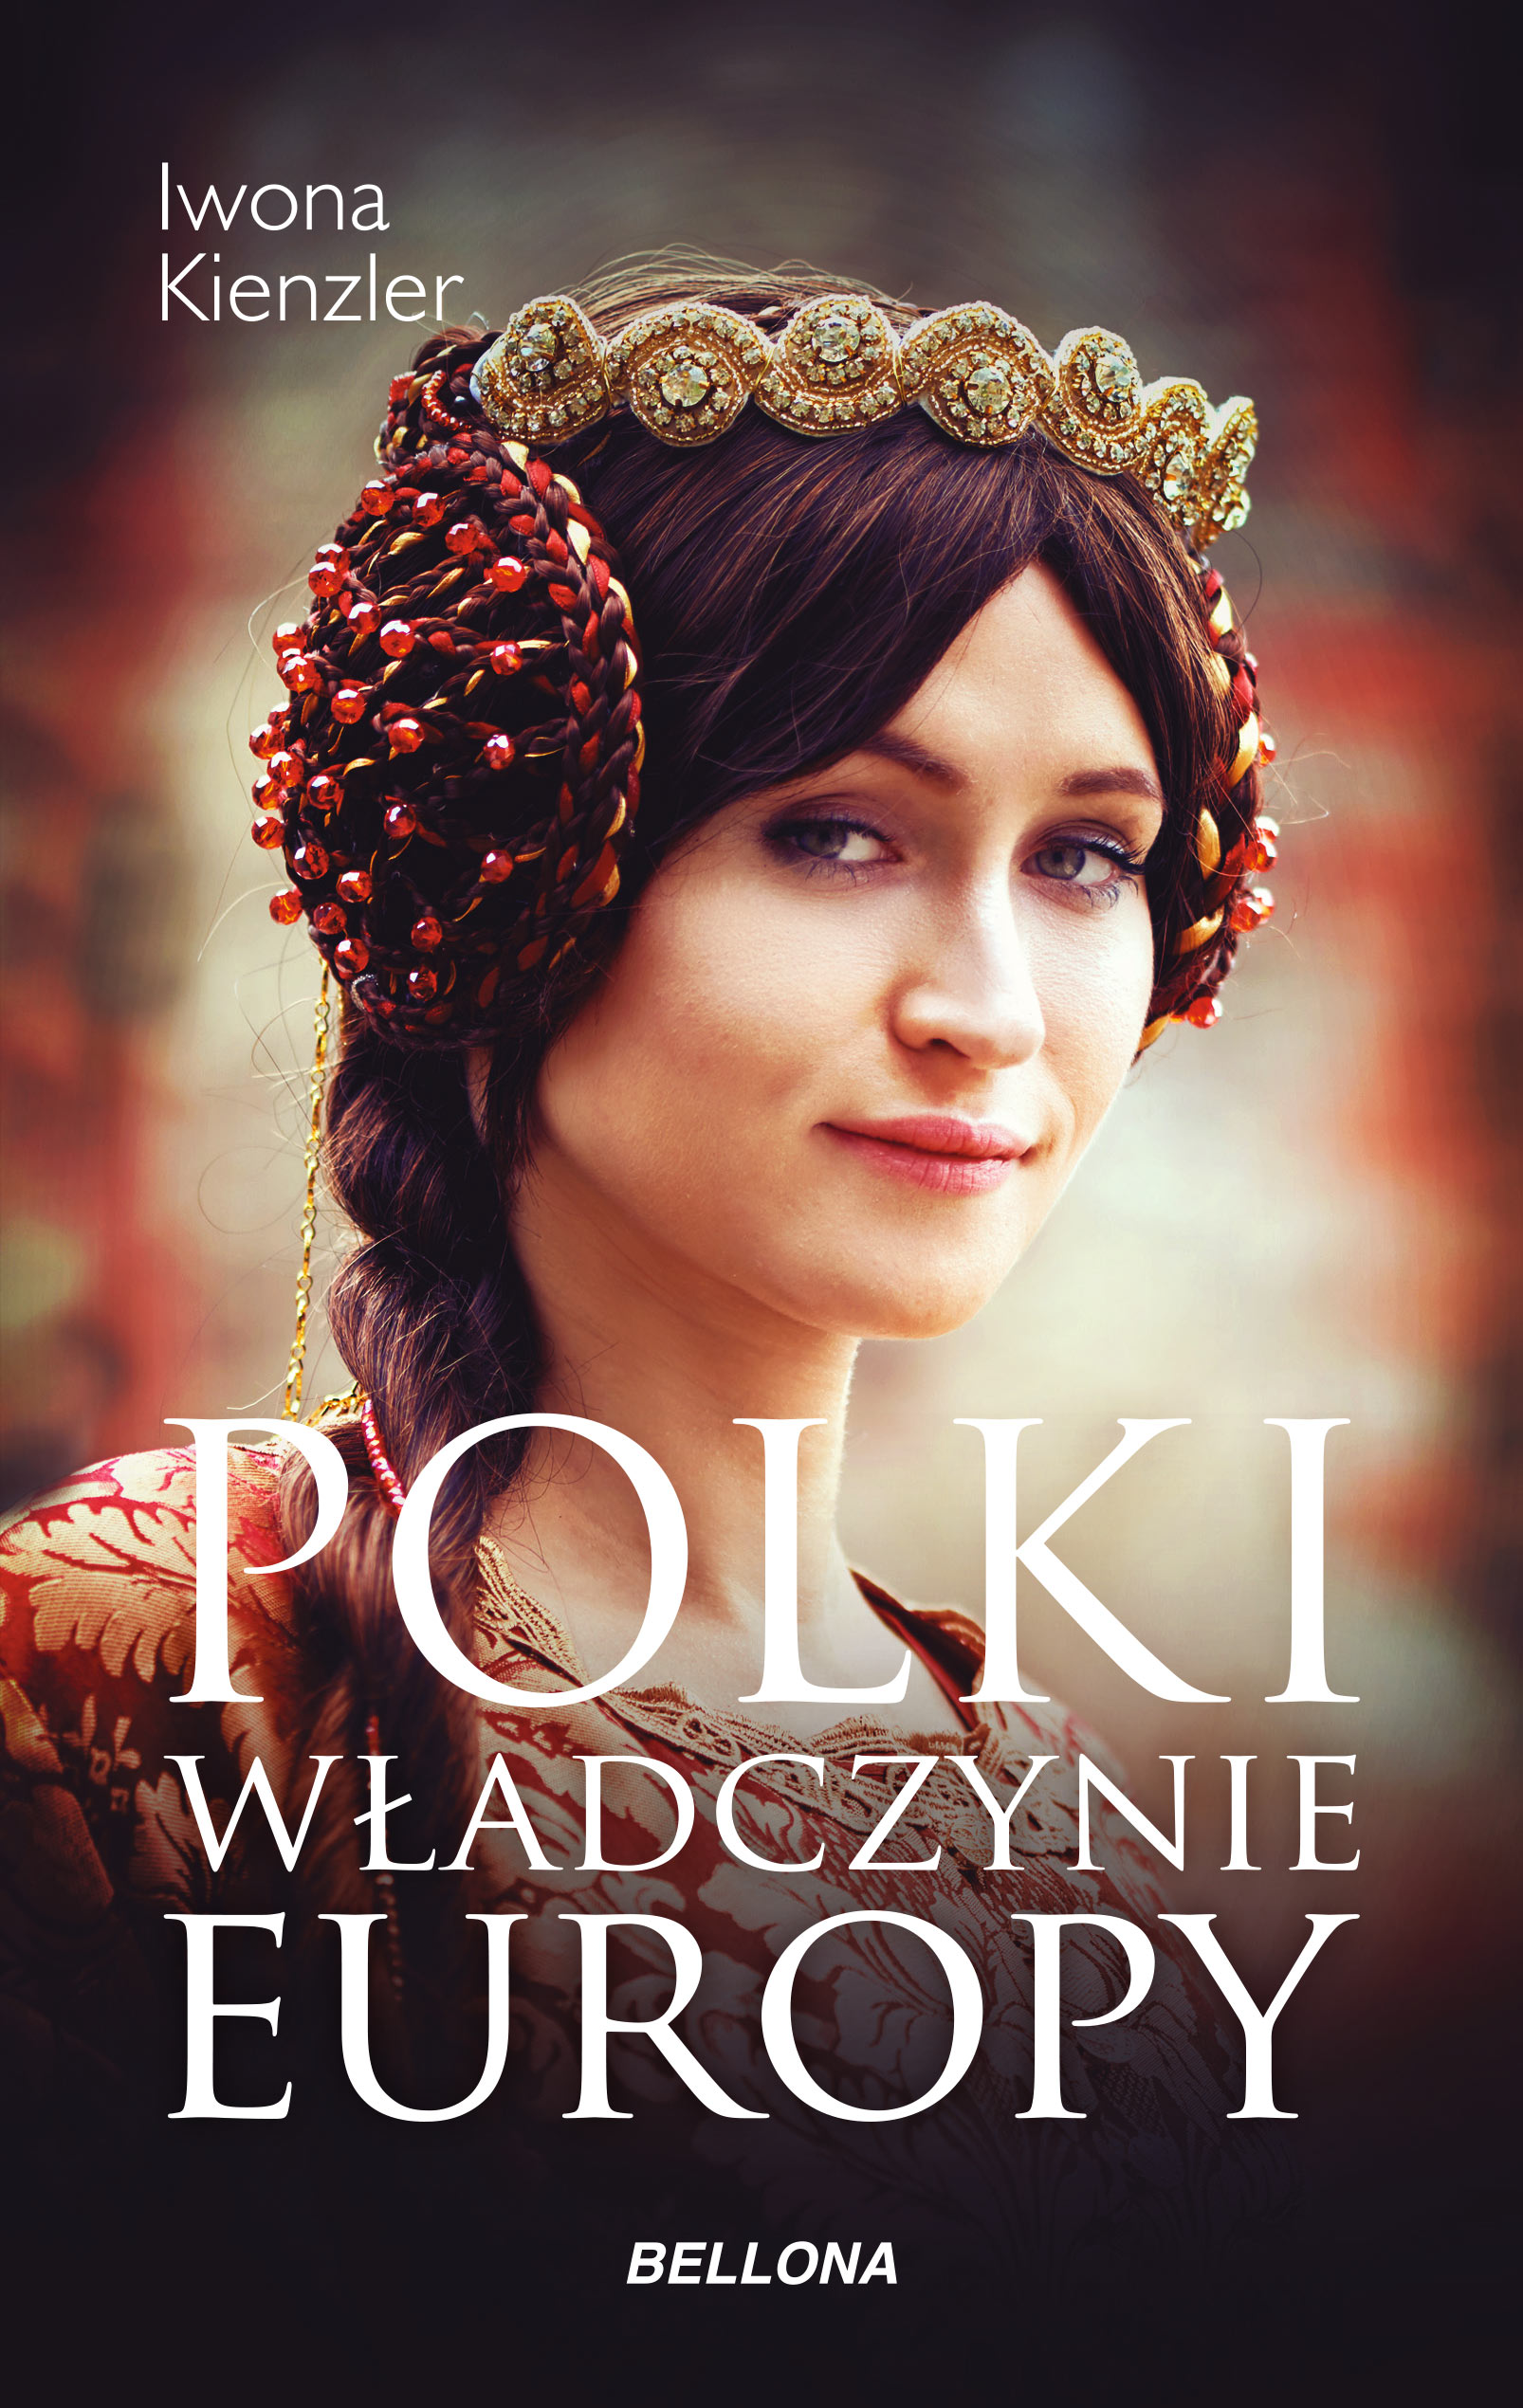 Polki – władczynie Europy